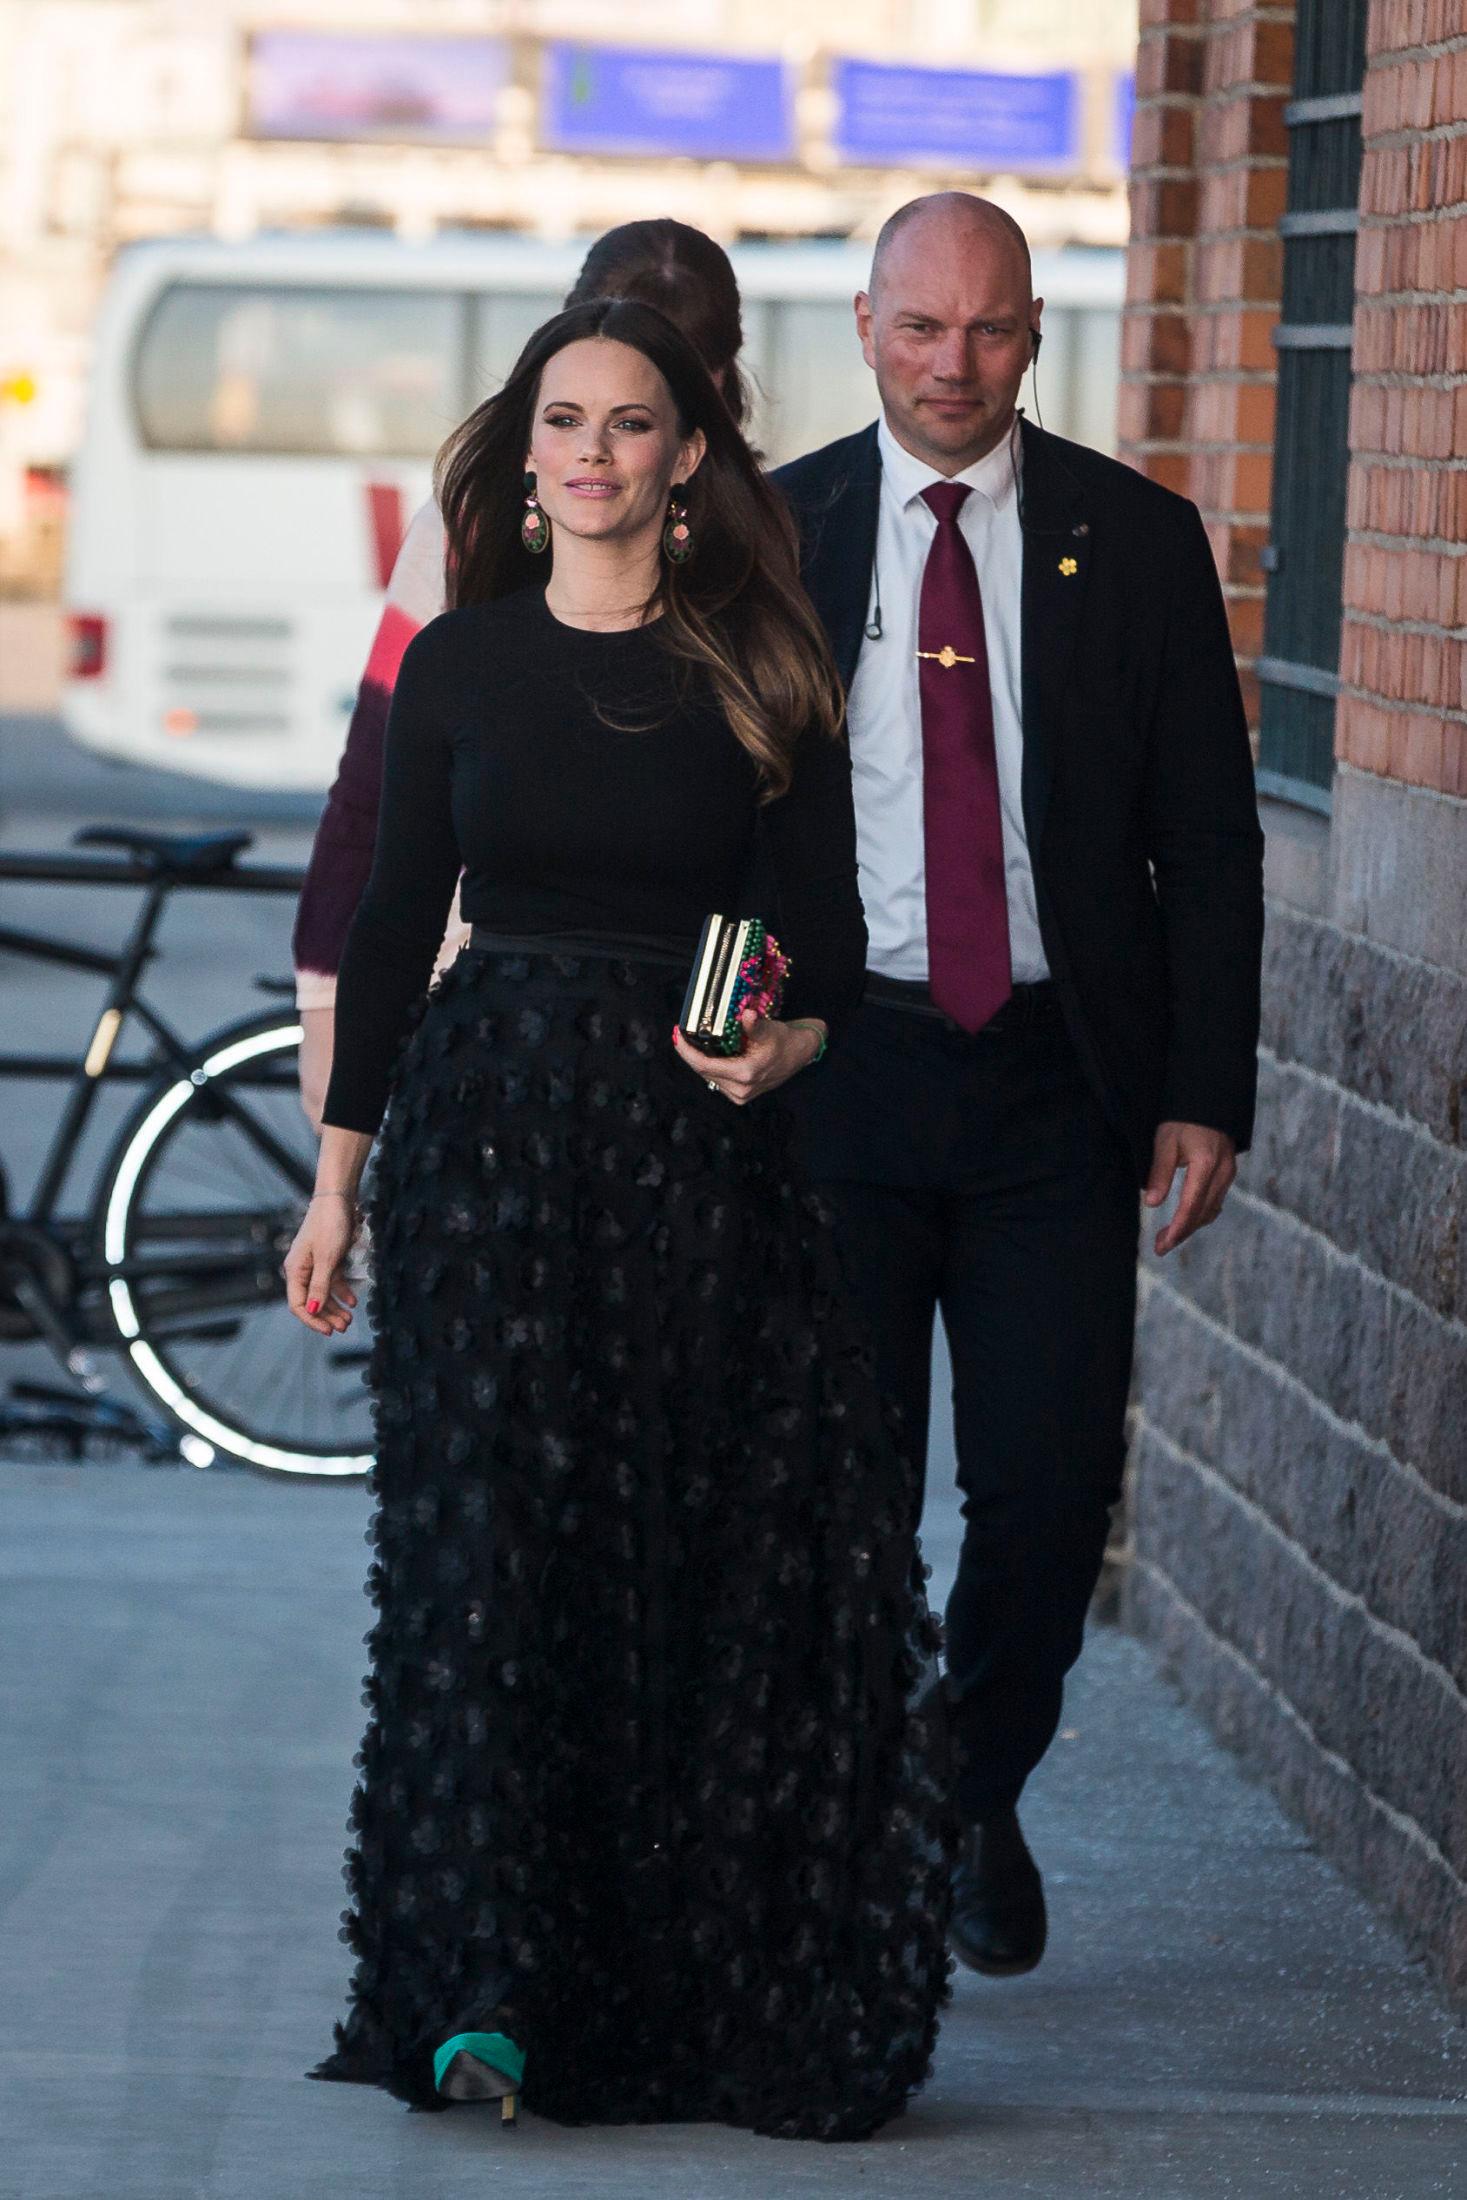 GJENBRUK: Her er prinsesse Sofia på vei til galla. Hun har brukt både skjørtet og øredobbene fra Caroline Svedbom ved en tidligere anledning. Foto: Getty Images.